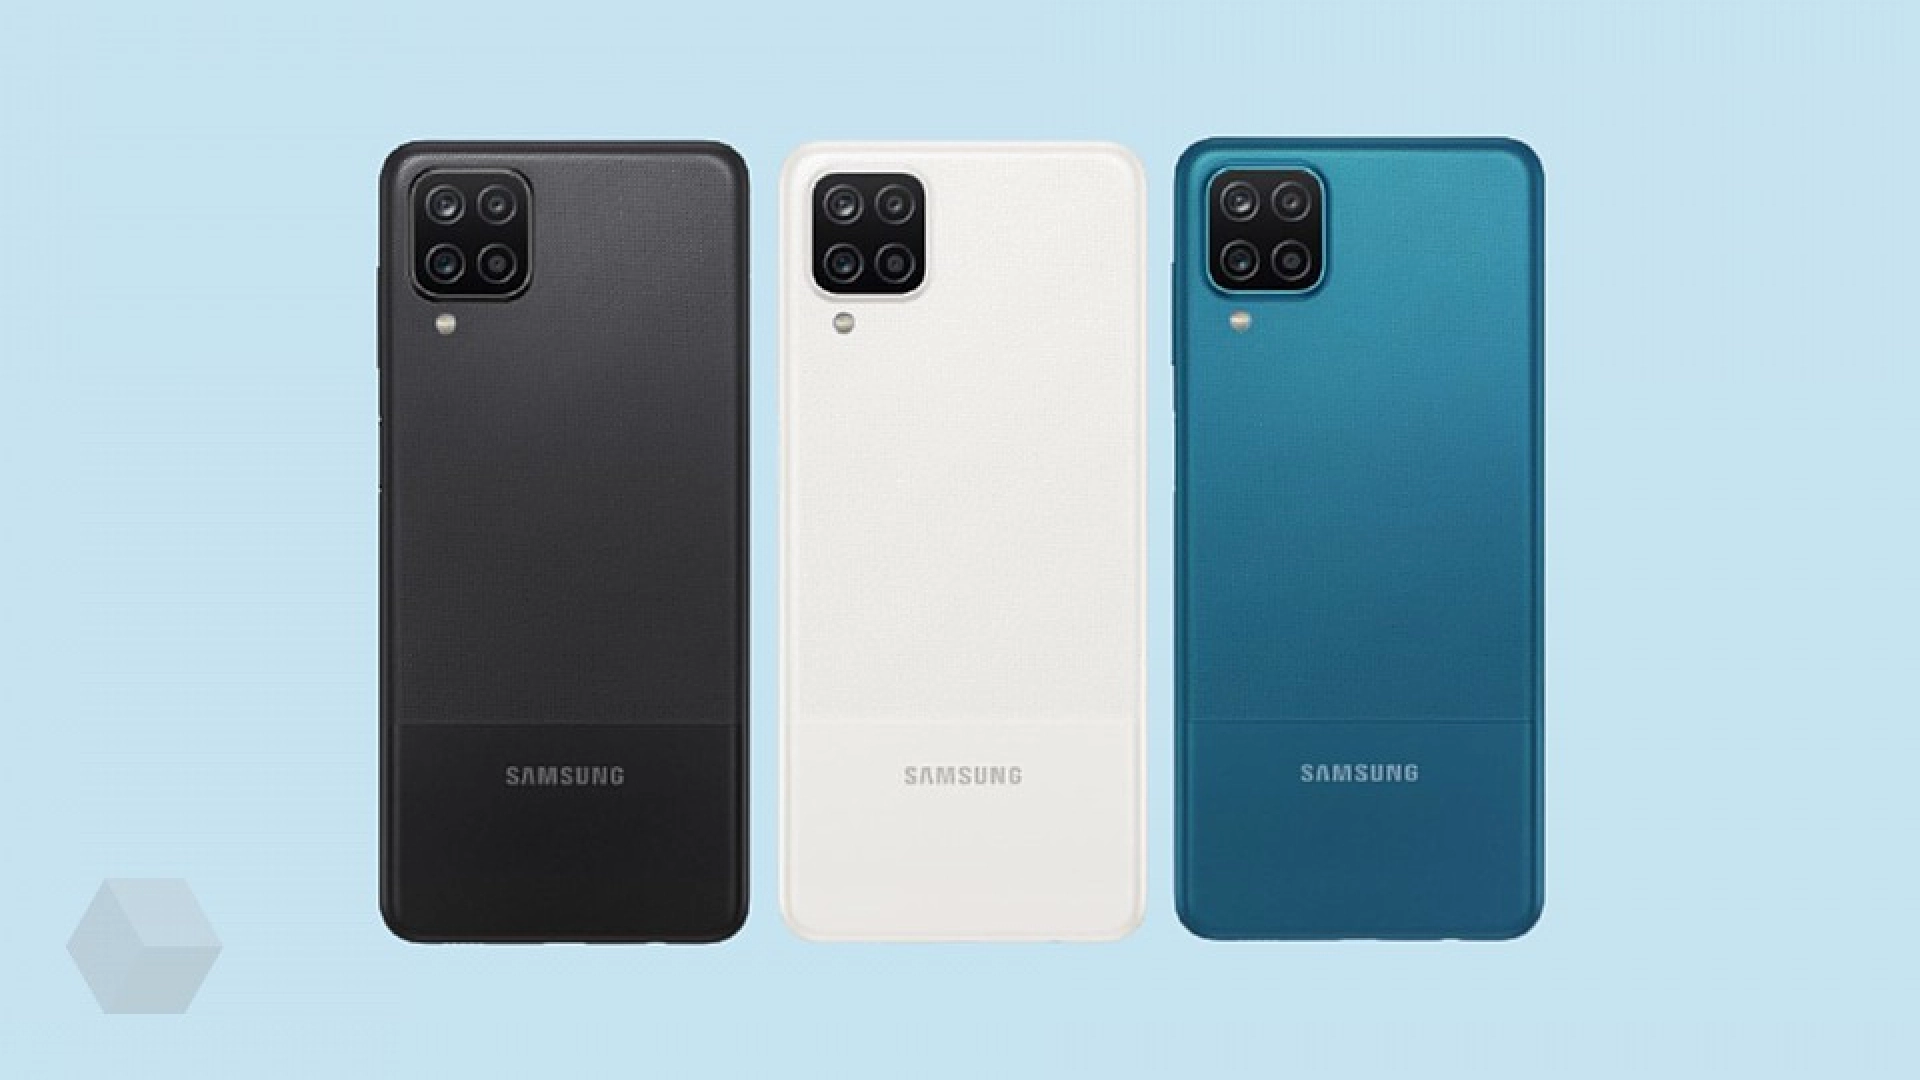 Бюджетный смартфон Galaxy A12 выйдет в версии с процессором Exynos 850